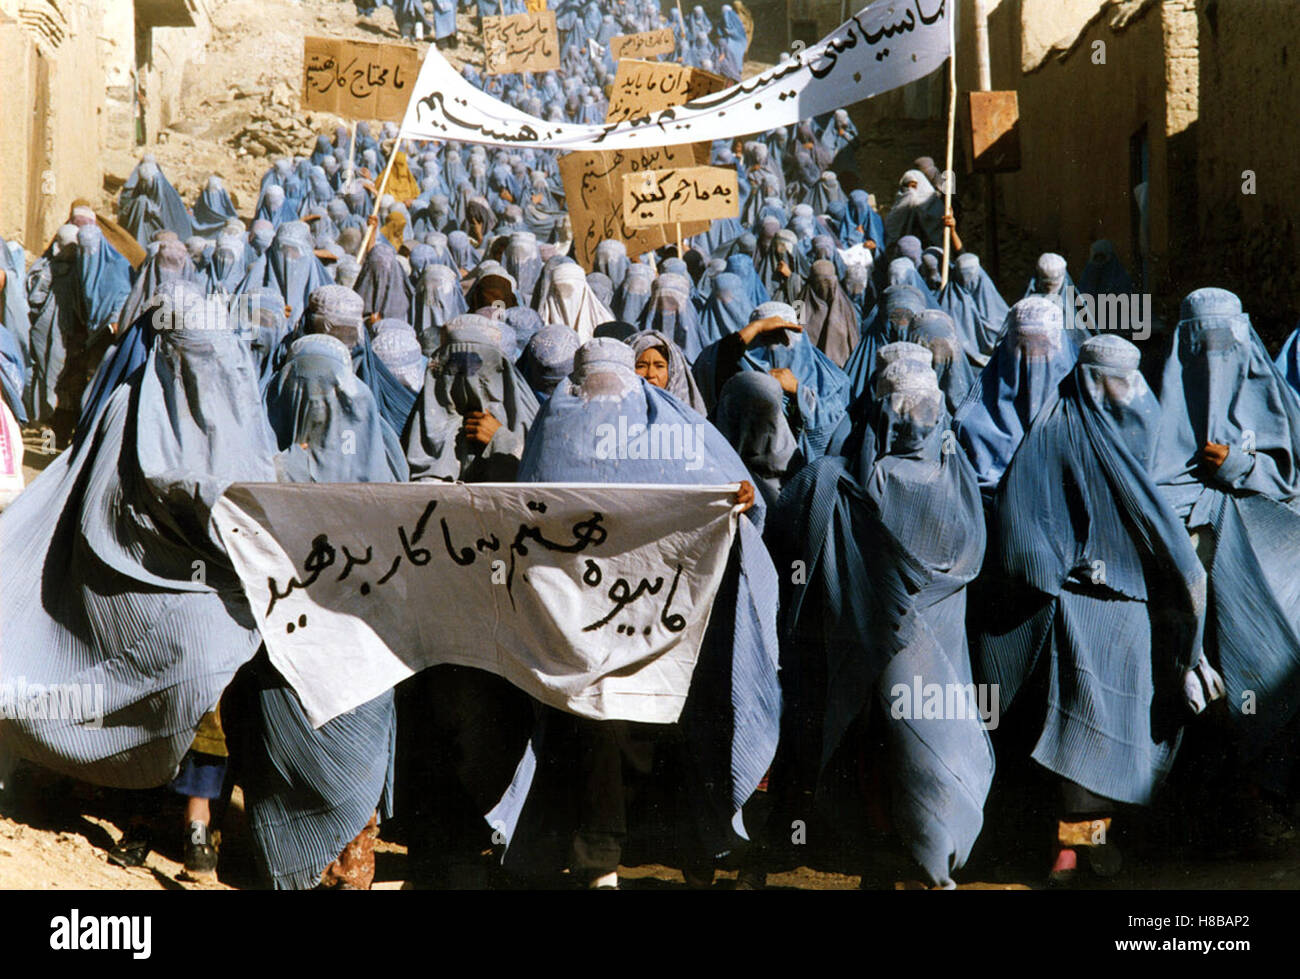 Osama, (OSAMA) AF-JAP-IRL-NL 2003, Regie: Siddiq Barmak, Szene von einer Demonstration unterdrückter Frauen gegen das Taliban-Regime, Key: Burka, Stock Photo